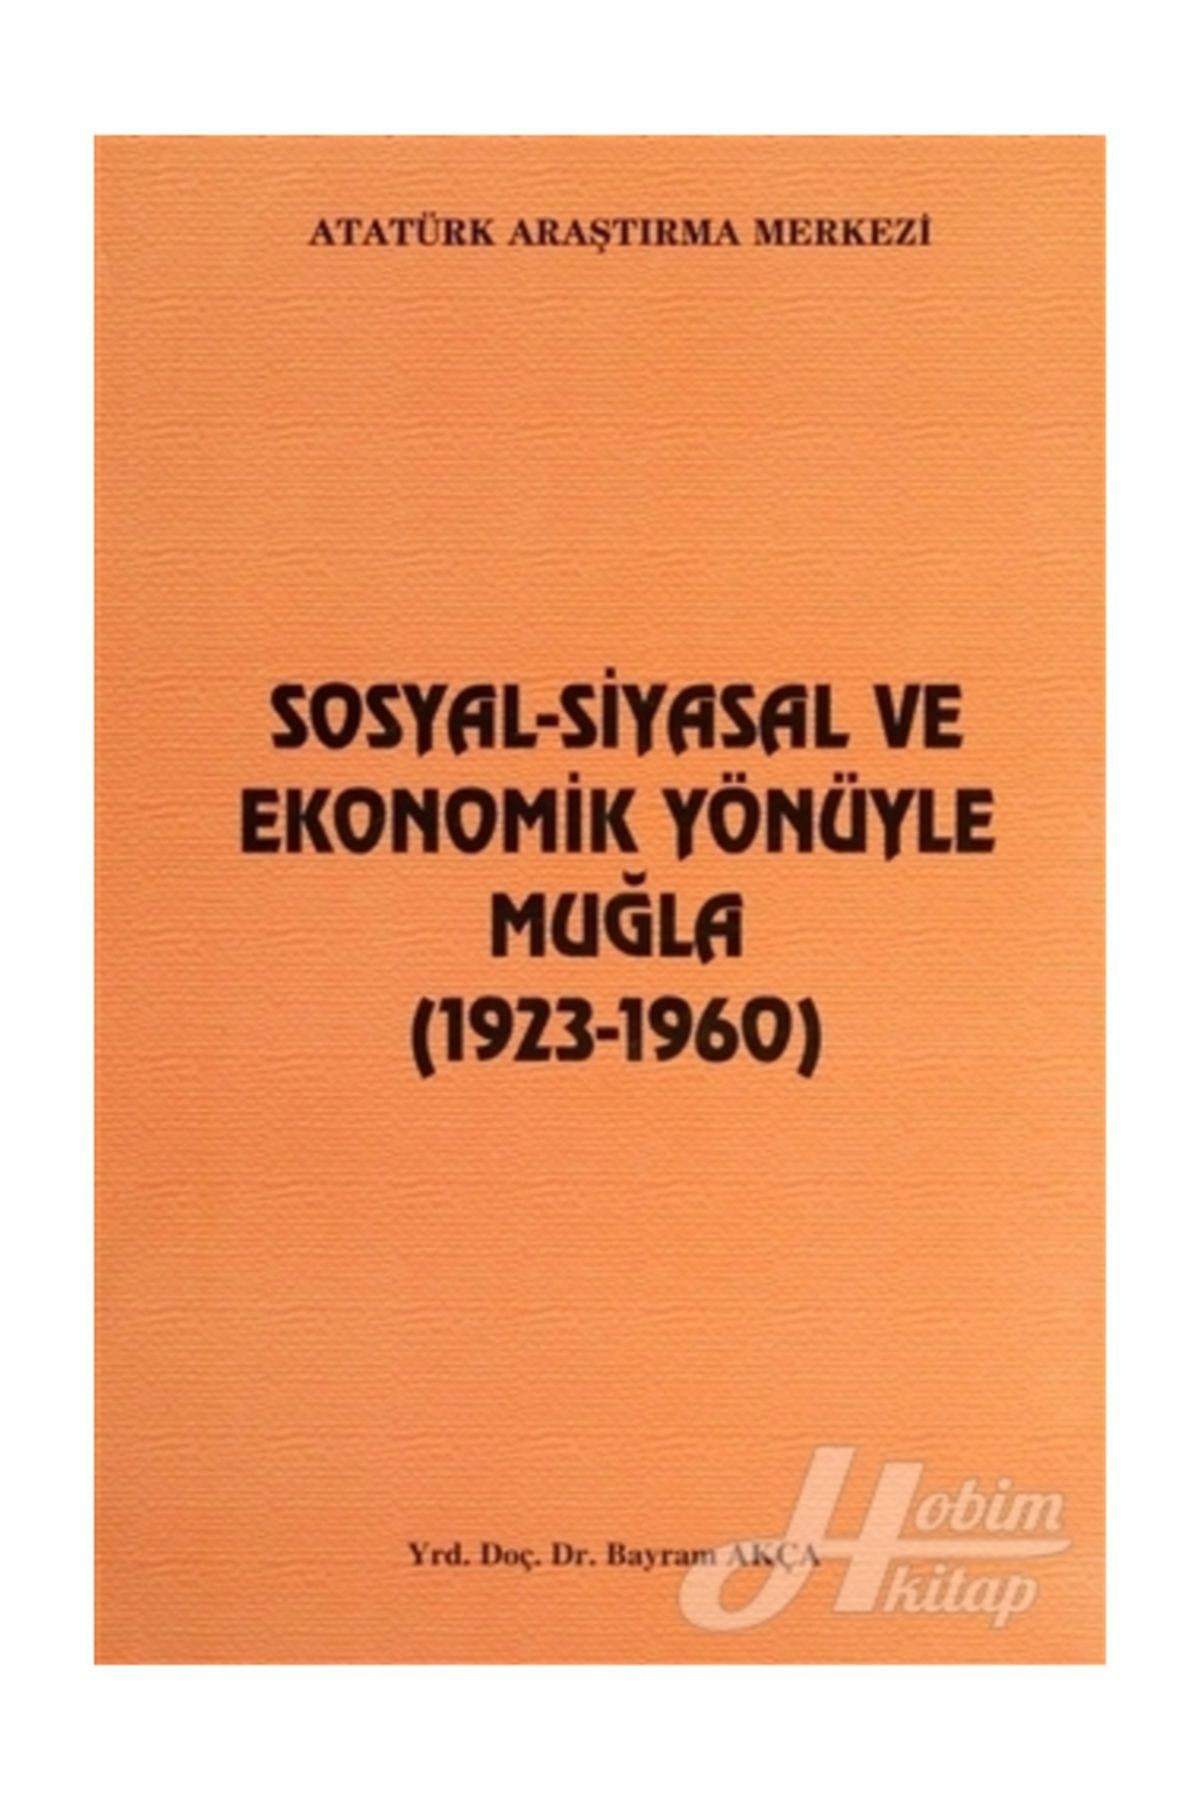 Atatürk Araştırma Merkezi Sosyal Siyasal Ve Ekonomik Yönüyle Muğla